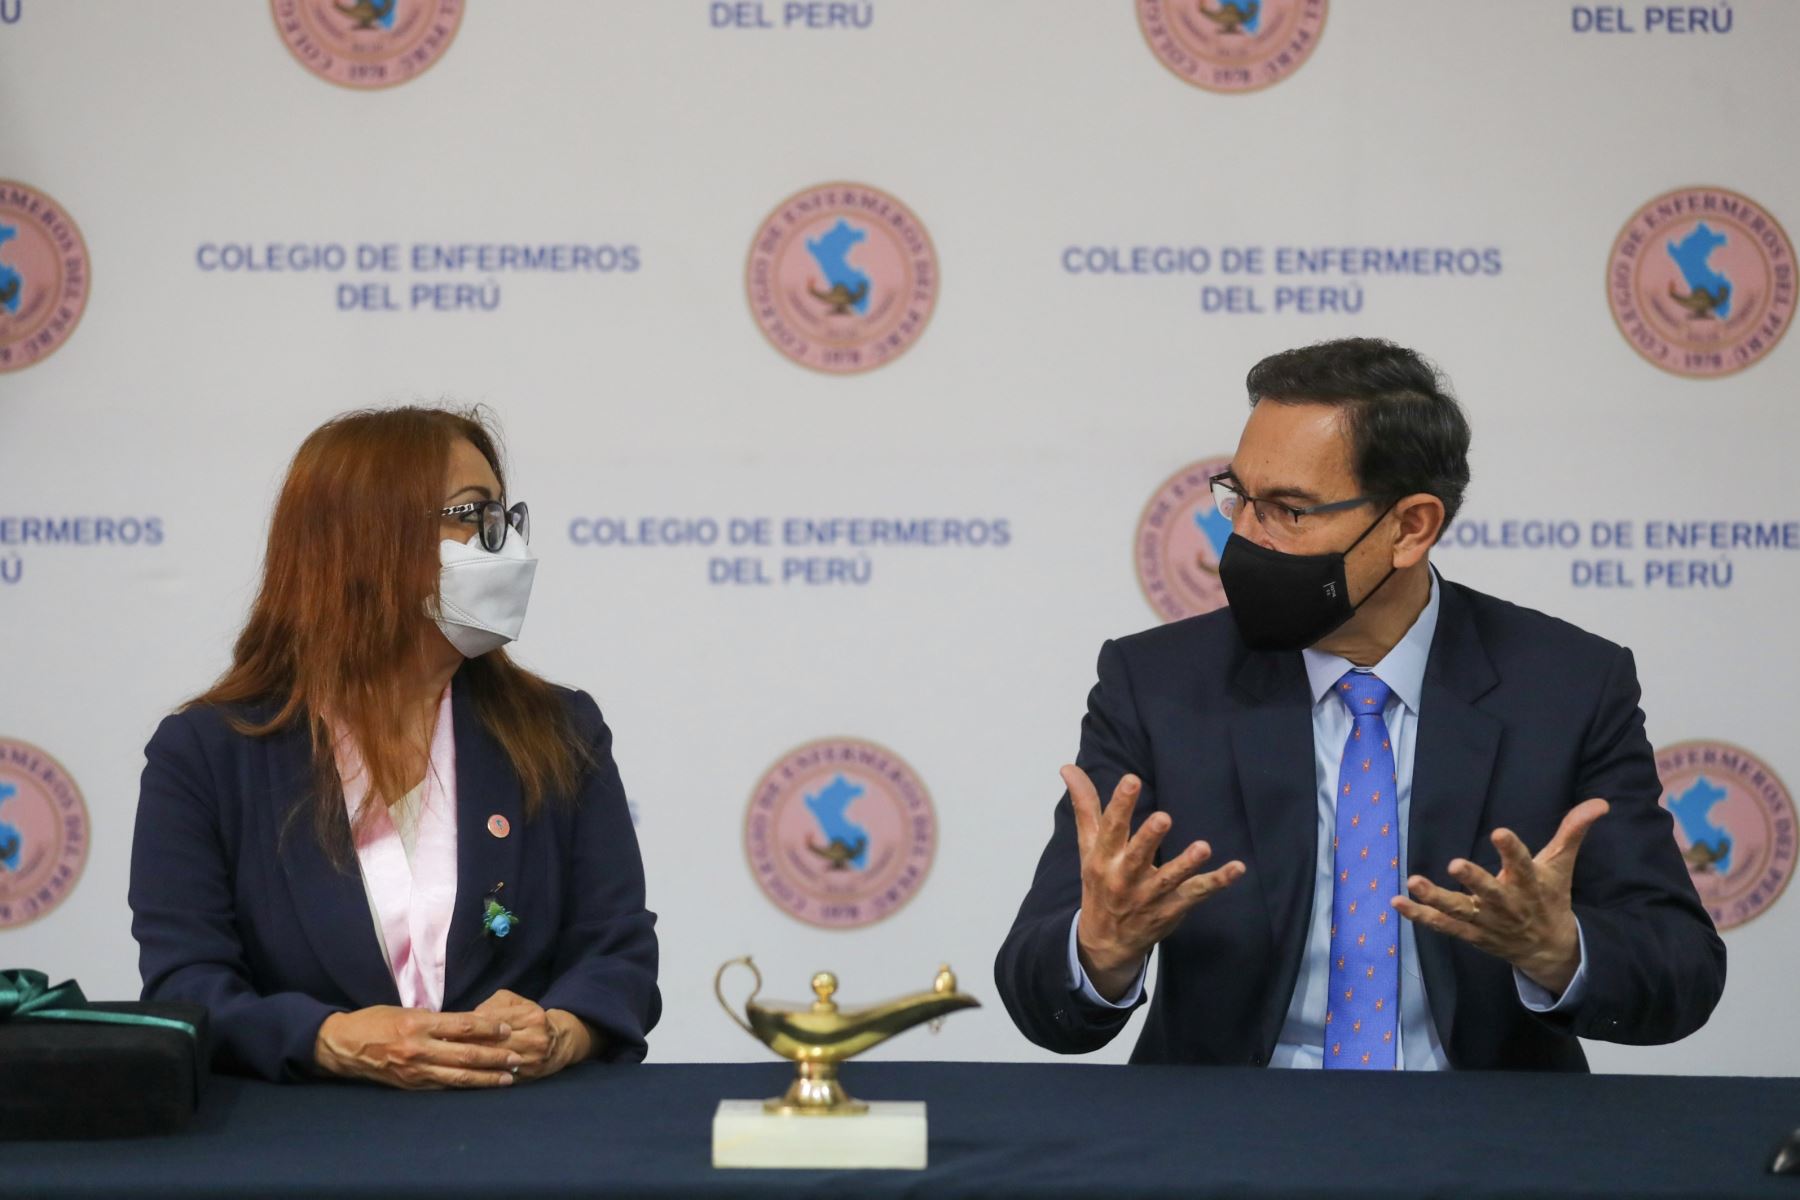 El presidente Martín Vizcarra, acudió al Colegio de Enfermeros del Perú, donde saludó y reconoció la esmerada labor de las enfermeras y los enfermeros en la atención y cuidado de pacientes en la primera línea de batalla frente al Covid-19. Foto: ANDINA/ Prensa Presidencia